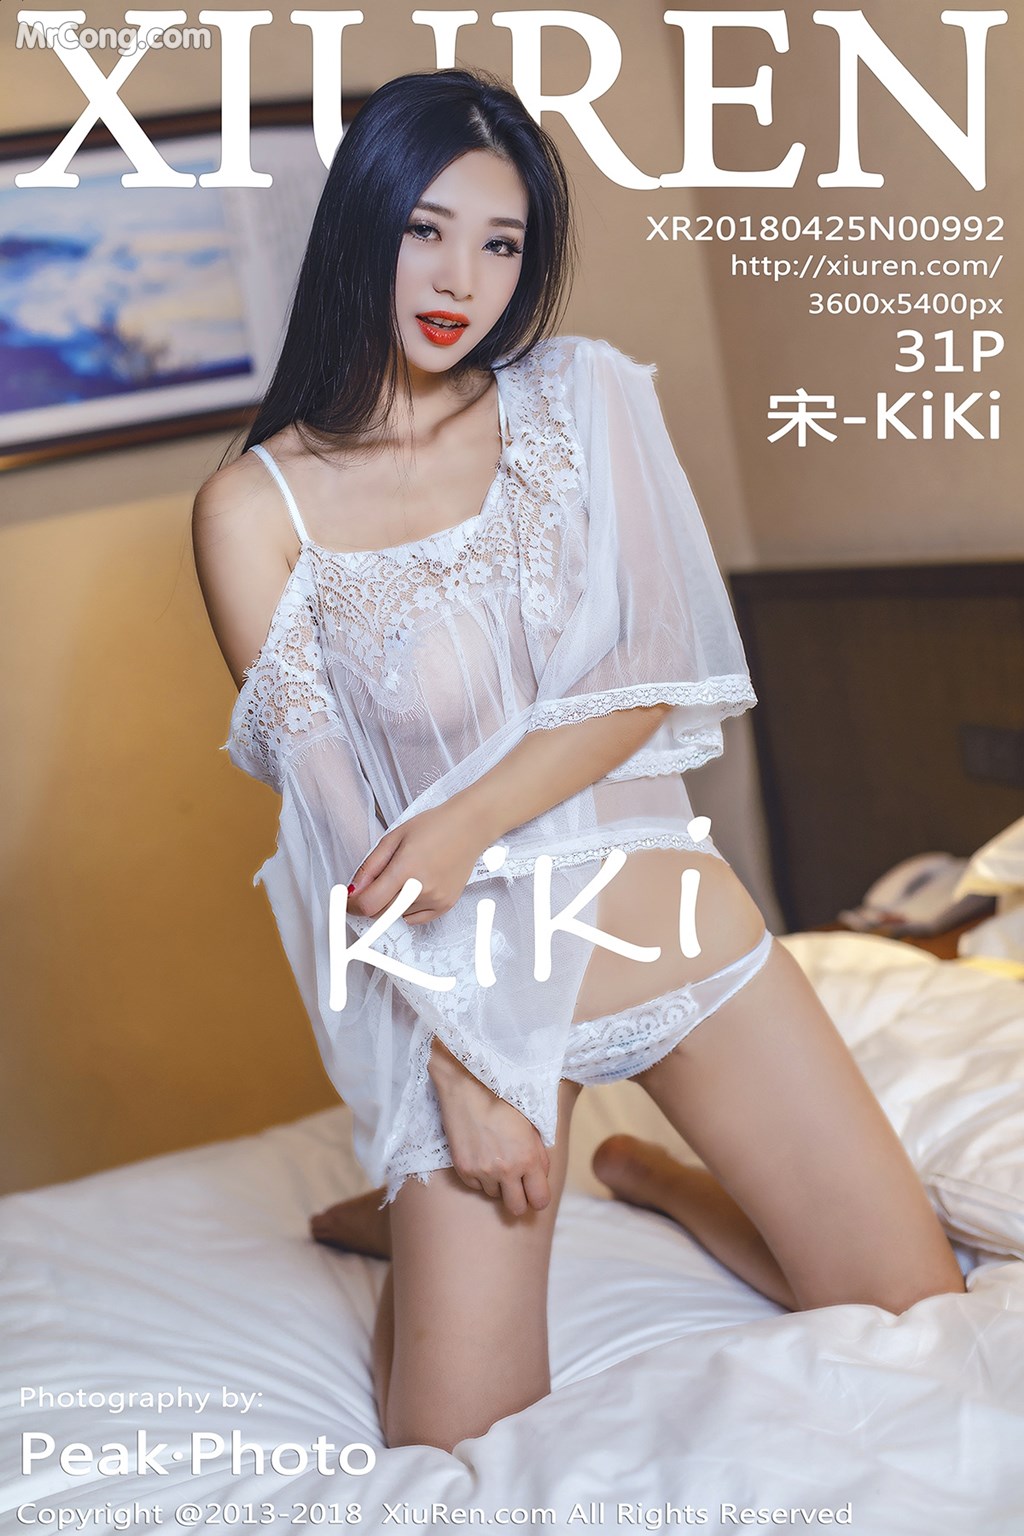 XIUREN No.992: Model 宋 -KiKi (32 photos) photo 1-0